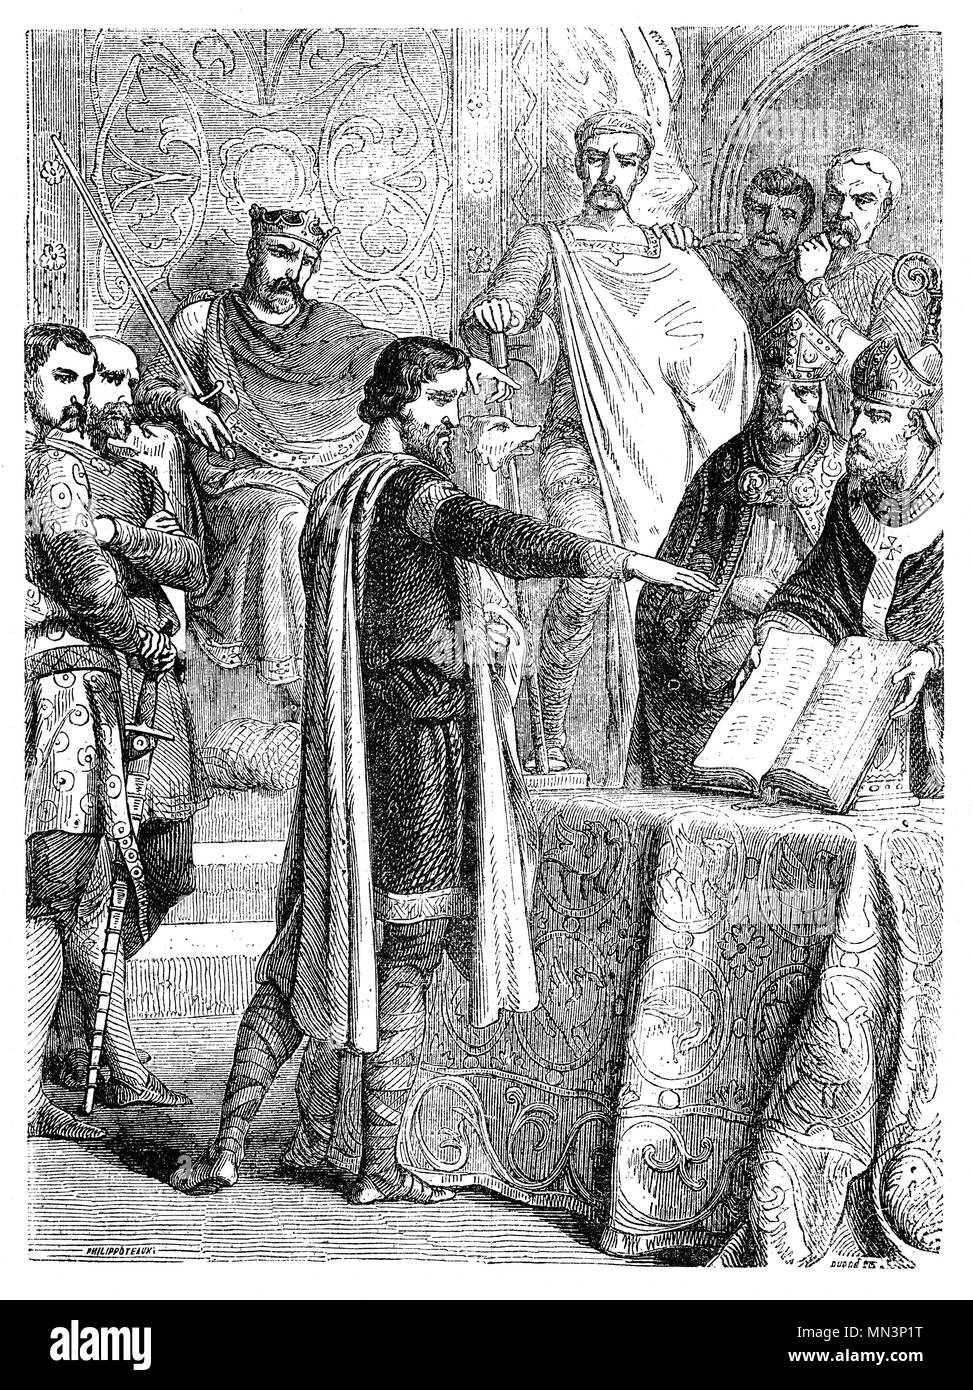 Harold Godwinson (1022-1066), a menudo llamado Harold II, fue el último rey anglosajón de Inglaterra. Reinó desde el 6 de enero de 1066 hasta su muerte en la batalla de Hastings. Anteriormente, en 1064, Harold aparentemente naufragó en las costas normandas y posteriormente el juramento de reliquias sagradas a William para apoyar su reclamación al trono inglés. Después de la muerte de Eduardo, Harold rompió esta supuesta juramento. Y así, el 14 de octubre, Harold murió luchando contra los invasores normandos dirigida por Guillermo el Conquistador durante la conquista Normanda de Inglaterra. Foto de stock